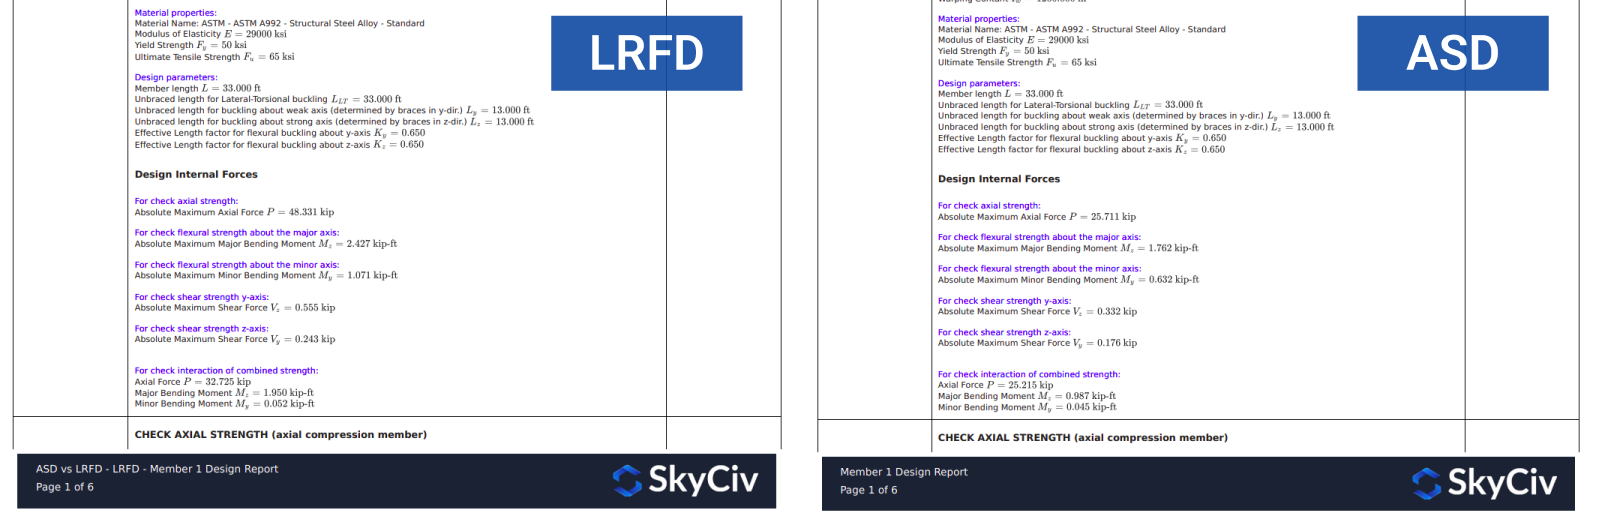 SkyCiv S3D montrant des rapports de conception détaillés pour ASD et LRFD